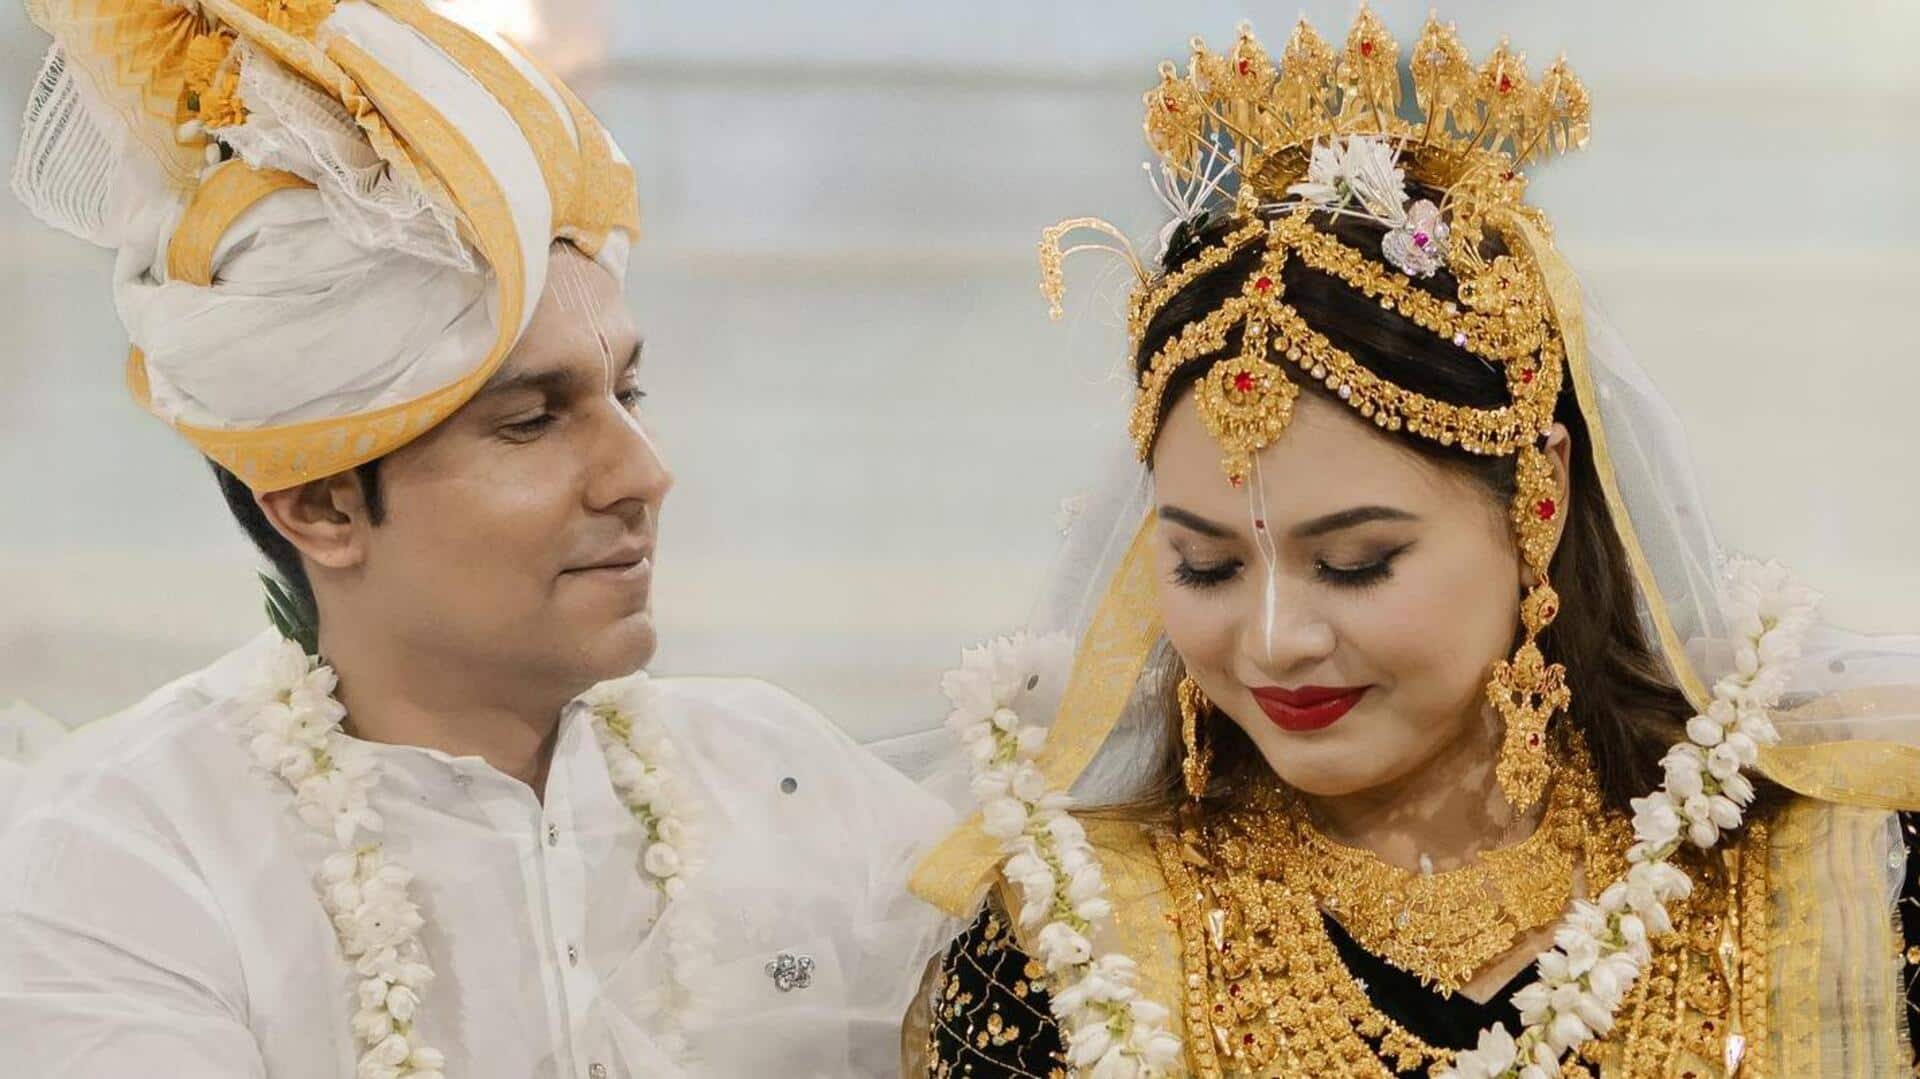 रणदीप हुड्डा ने मणिपुरी रीति-रिवाजों से रचाई लिन लैशराम से शादी, देखिए तस्वीरें और वीडियो